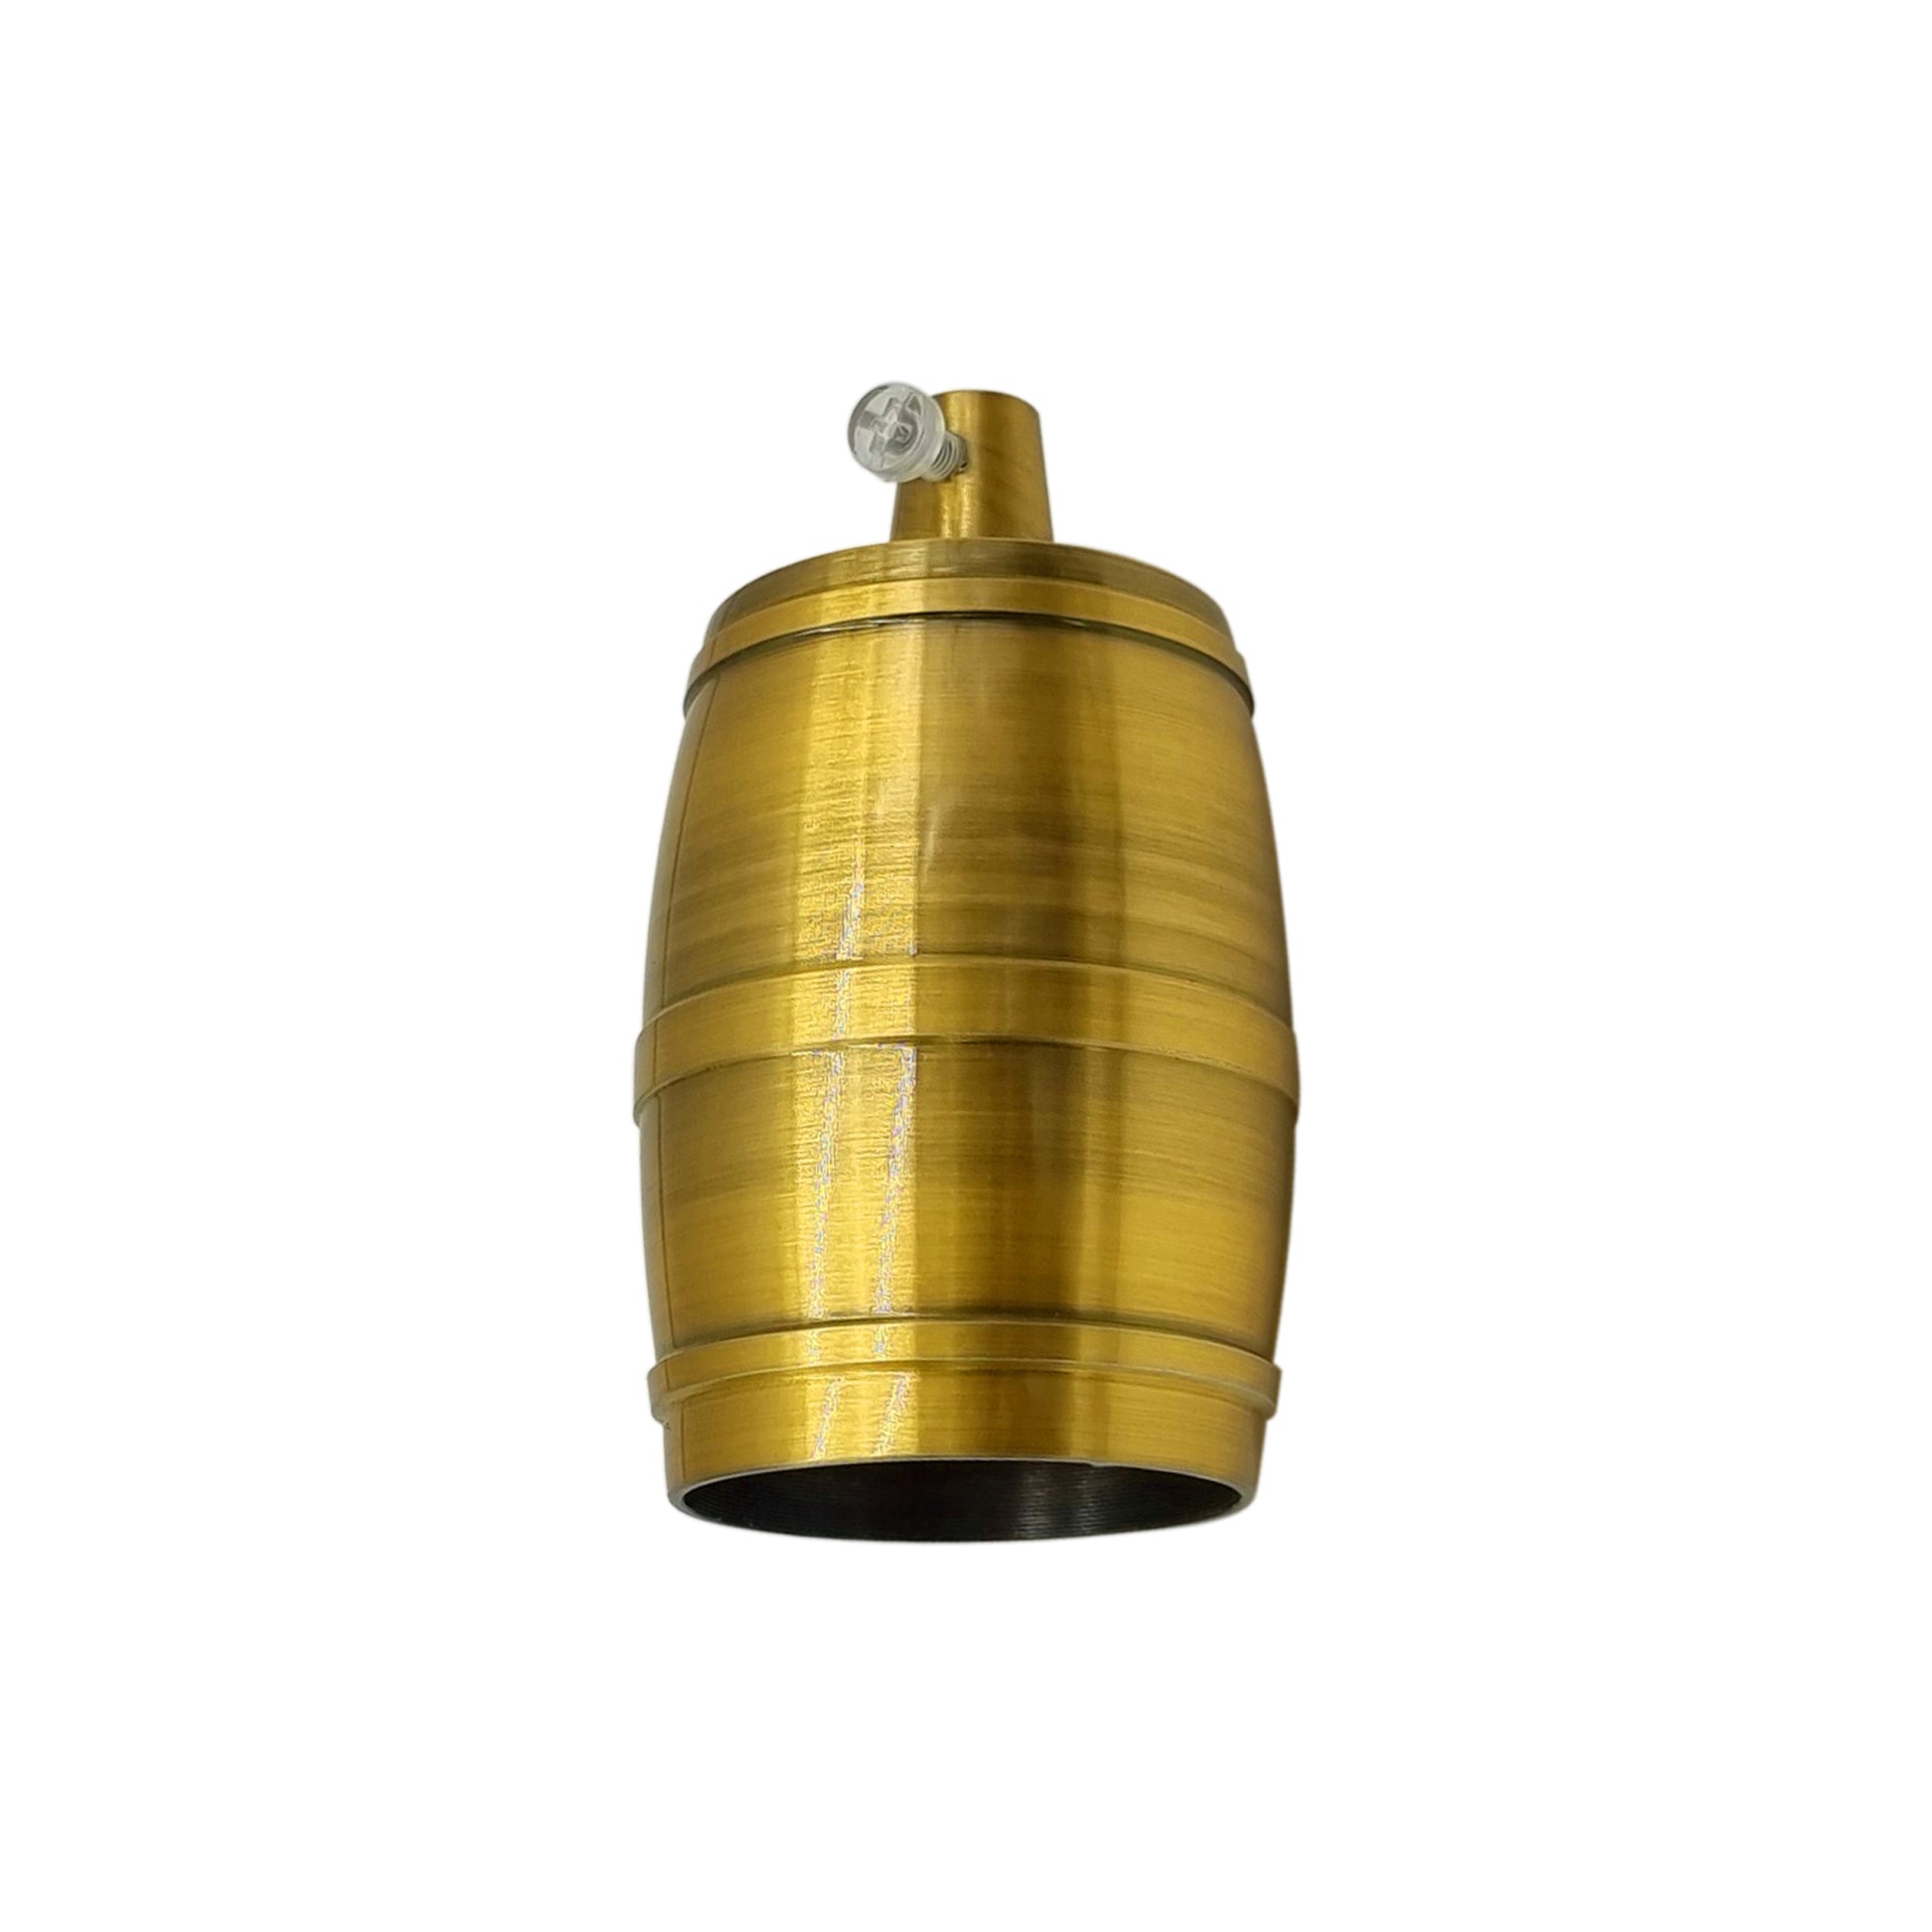 yellow brass Antique Barrel E27 Lamp Holder